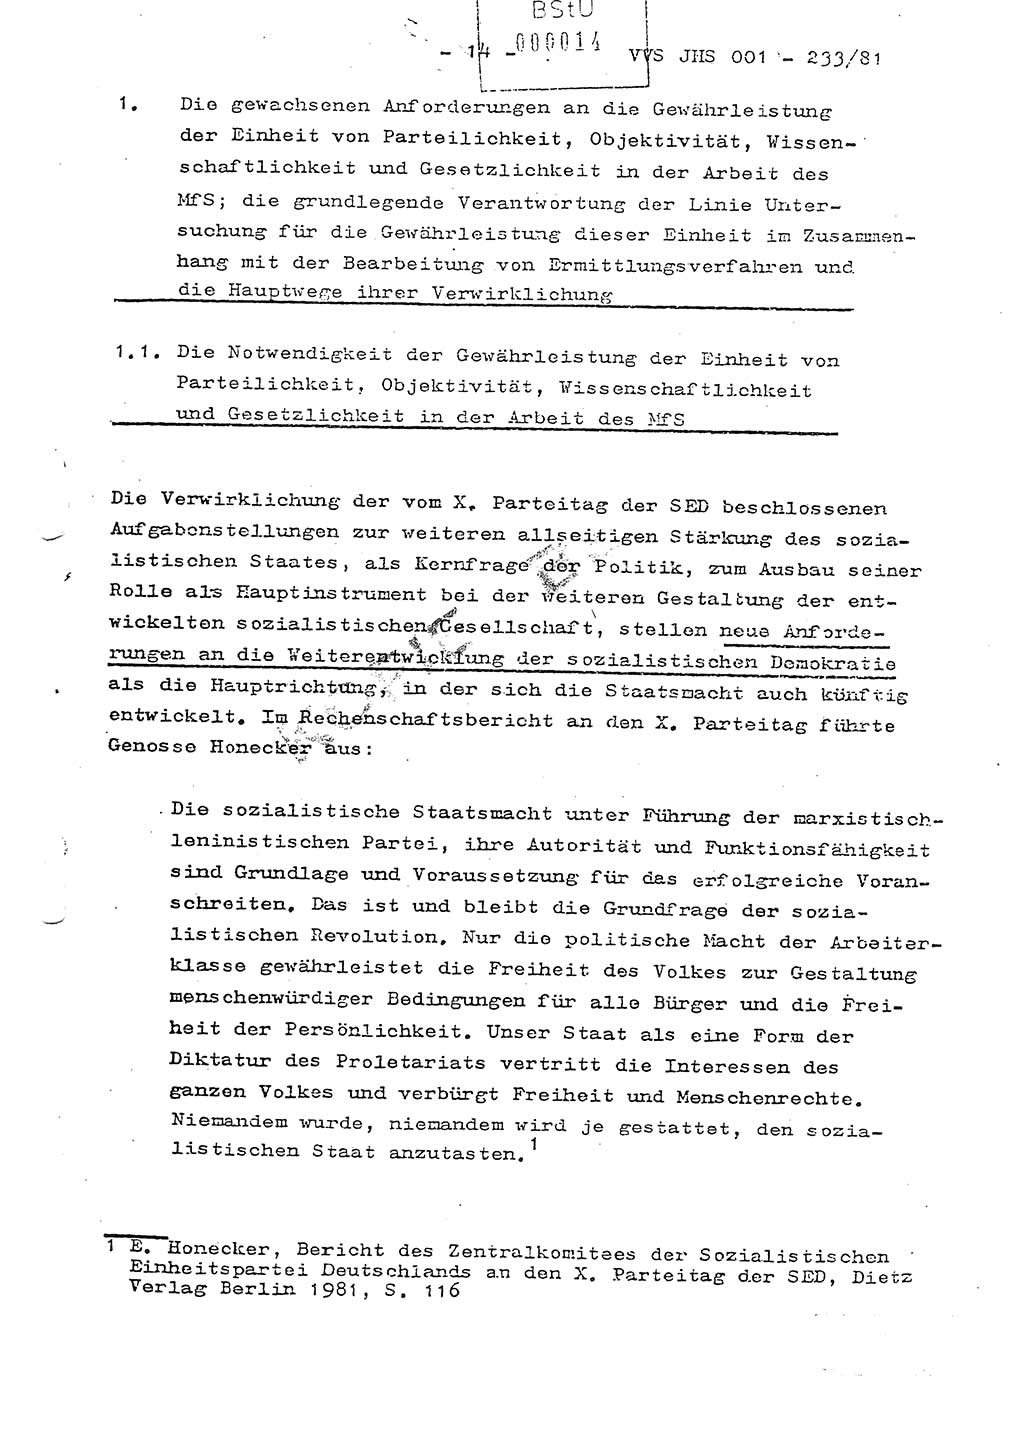 Dissertation Oberstleutnant Horst Zank (JHS), Oberstleutnant Dr. Karl-Heinz Knoblauch (JHS), Oberstleutnant Gustav-Adolf Kowalewski (HA Ⅸ), Oberstleutnant Wolfgang Plötner (HA Ⅸ), Ministerium für Staatssicherheit (MfS) [Deutsche Demokratische Republik (DDR)], Juristische Hochschule (JHS), Vertrauliche Verschlußsache (VVS) o001-233/81, Potsdam 1981, Blatt 14 (Diss. MfS DDR JHS VVS o001-233/81 1981, Bl. 14)